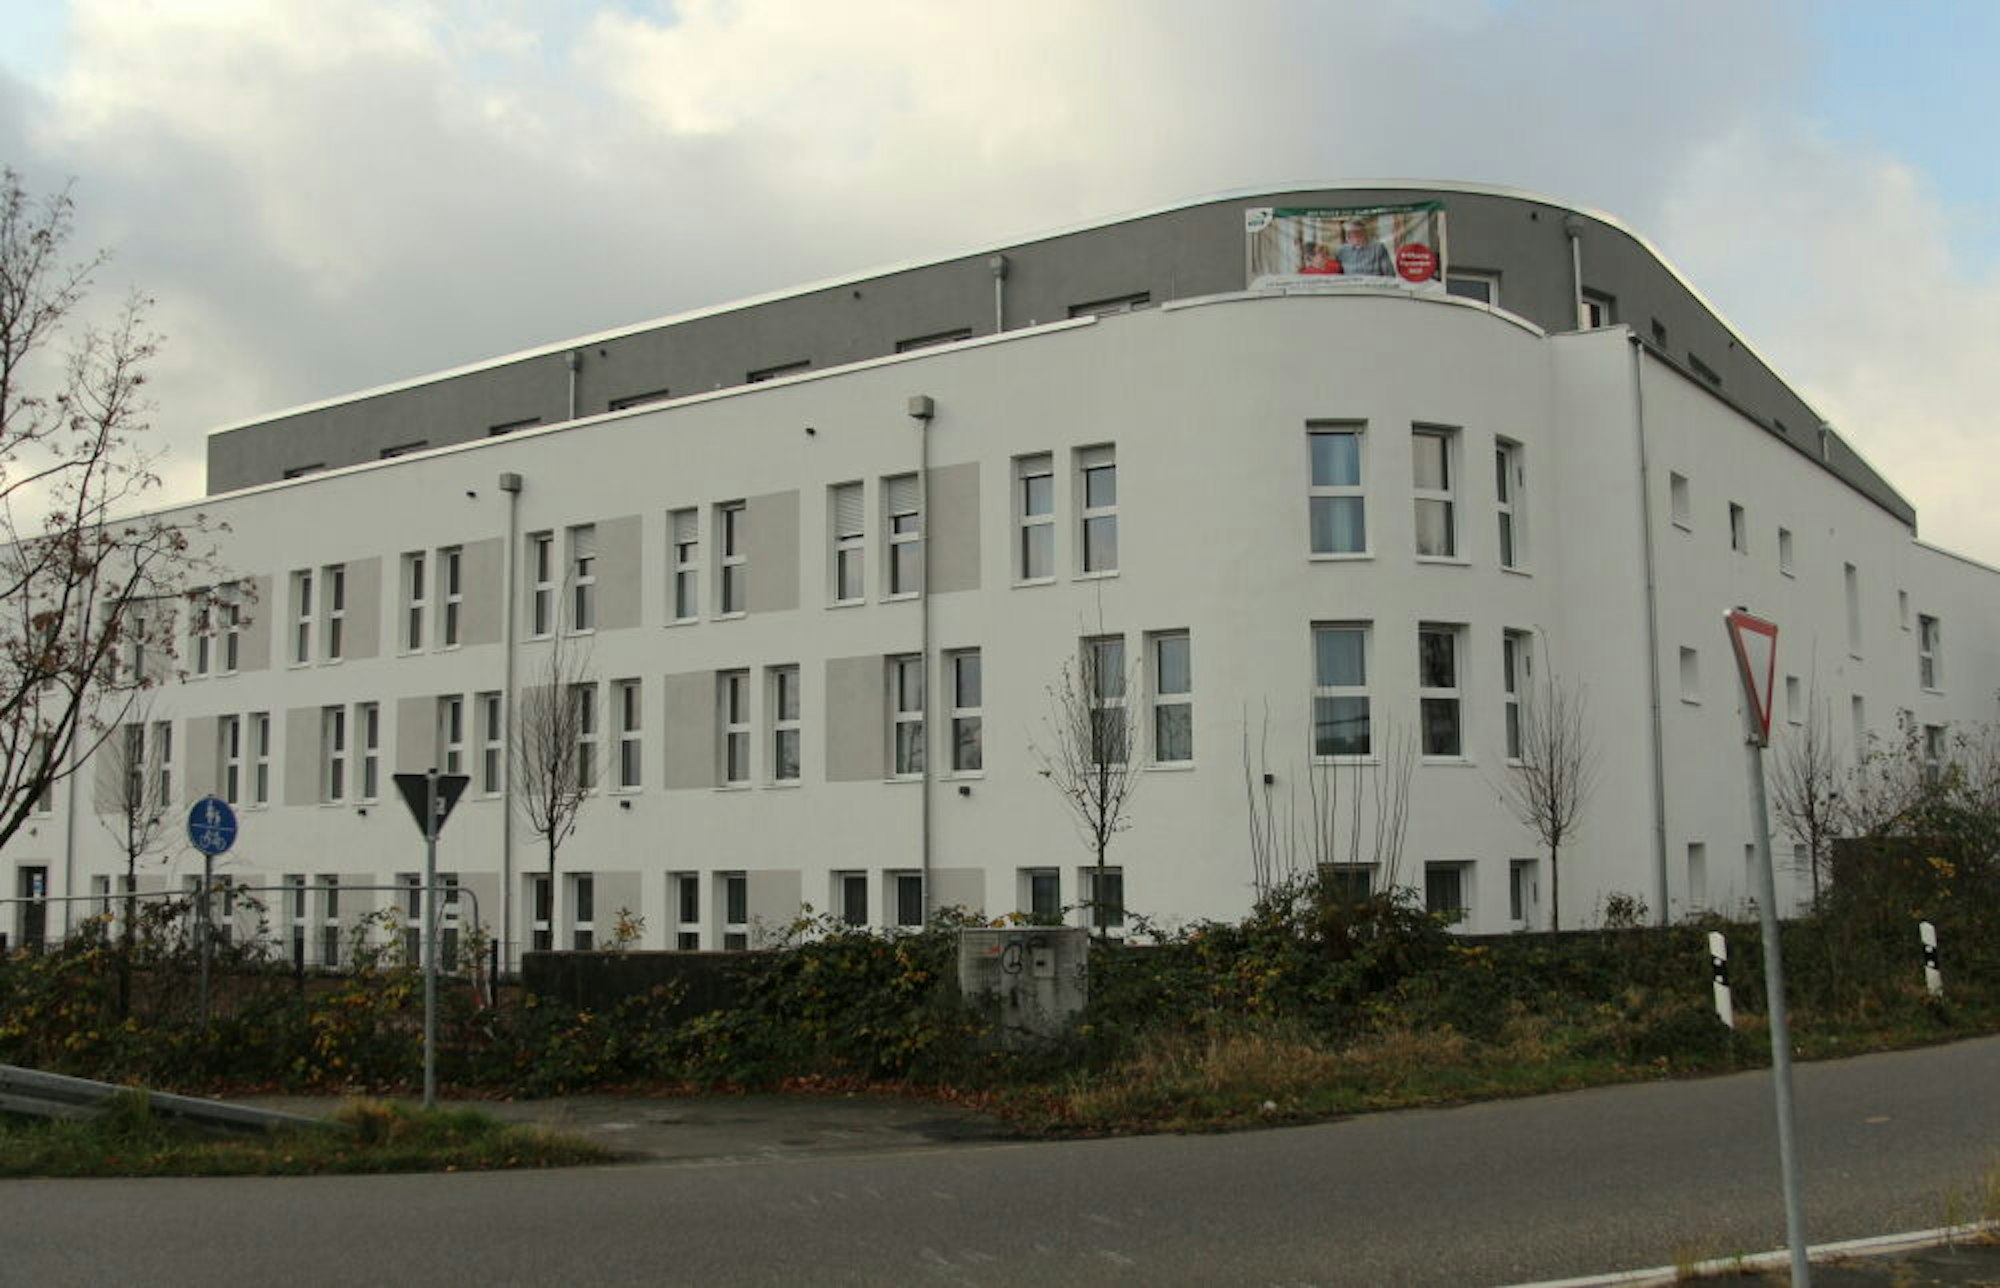 Die neue Alloheim-Senioren-Residenz am Narzissenweg wurde erst kürzlich eröffnet.